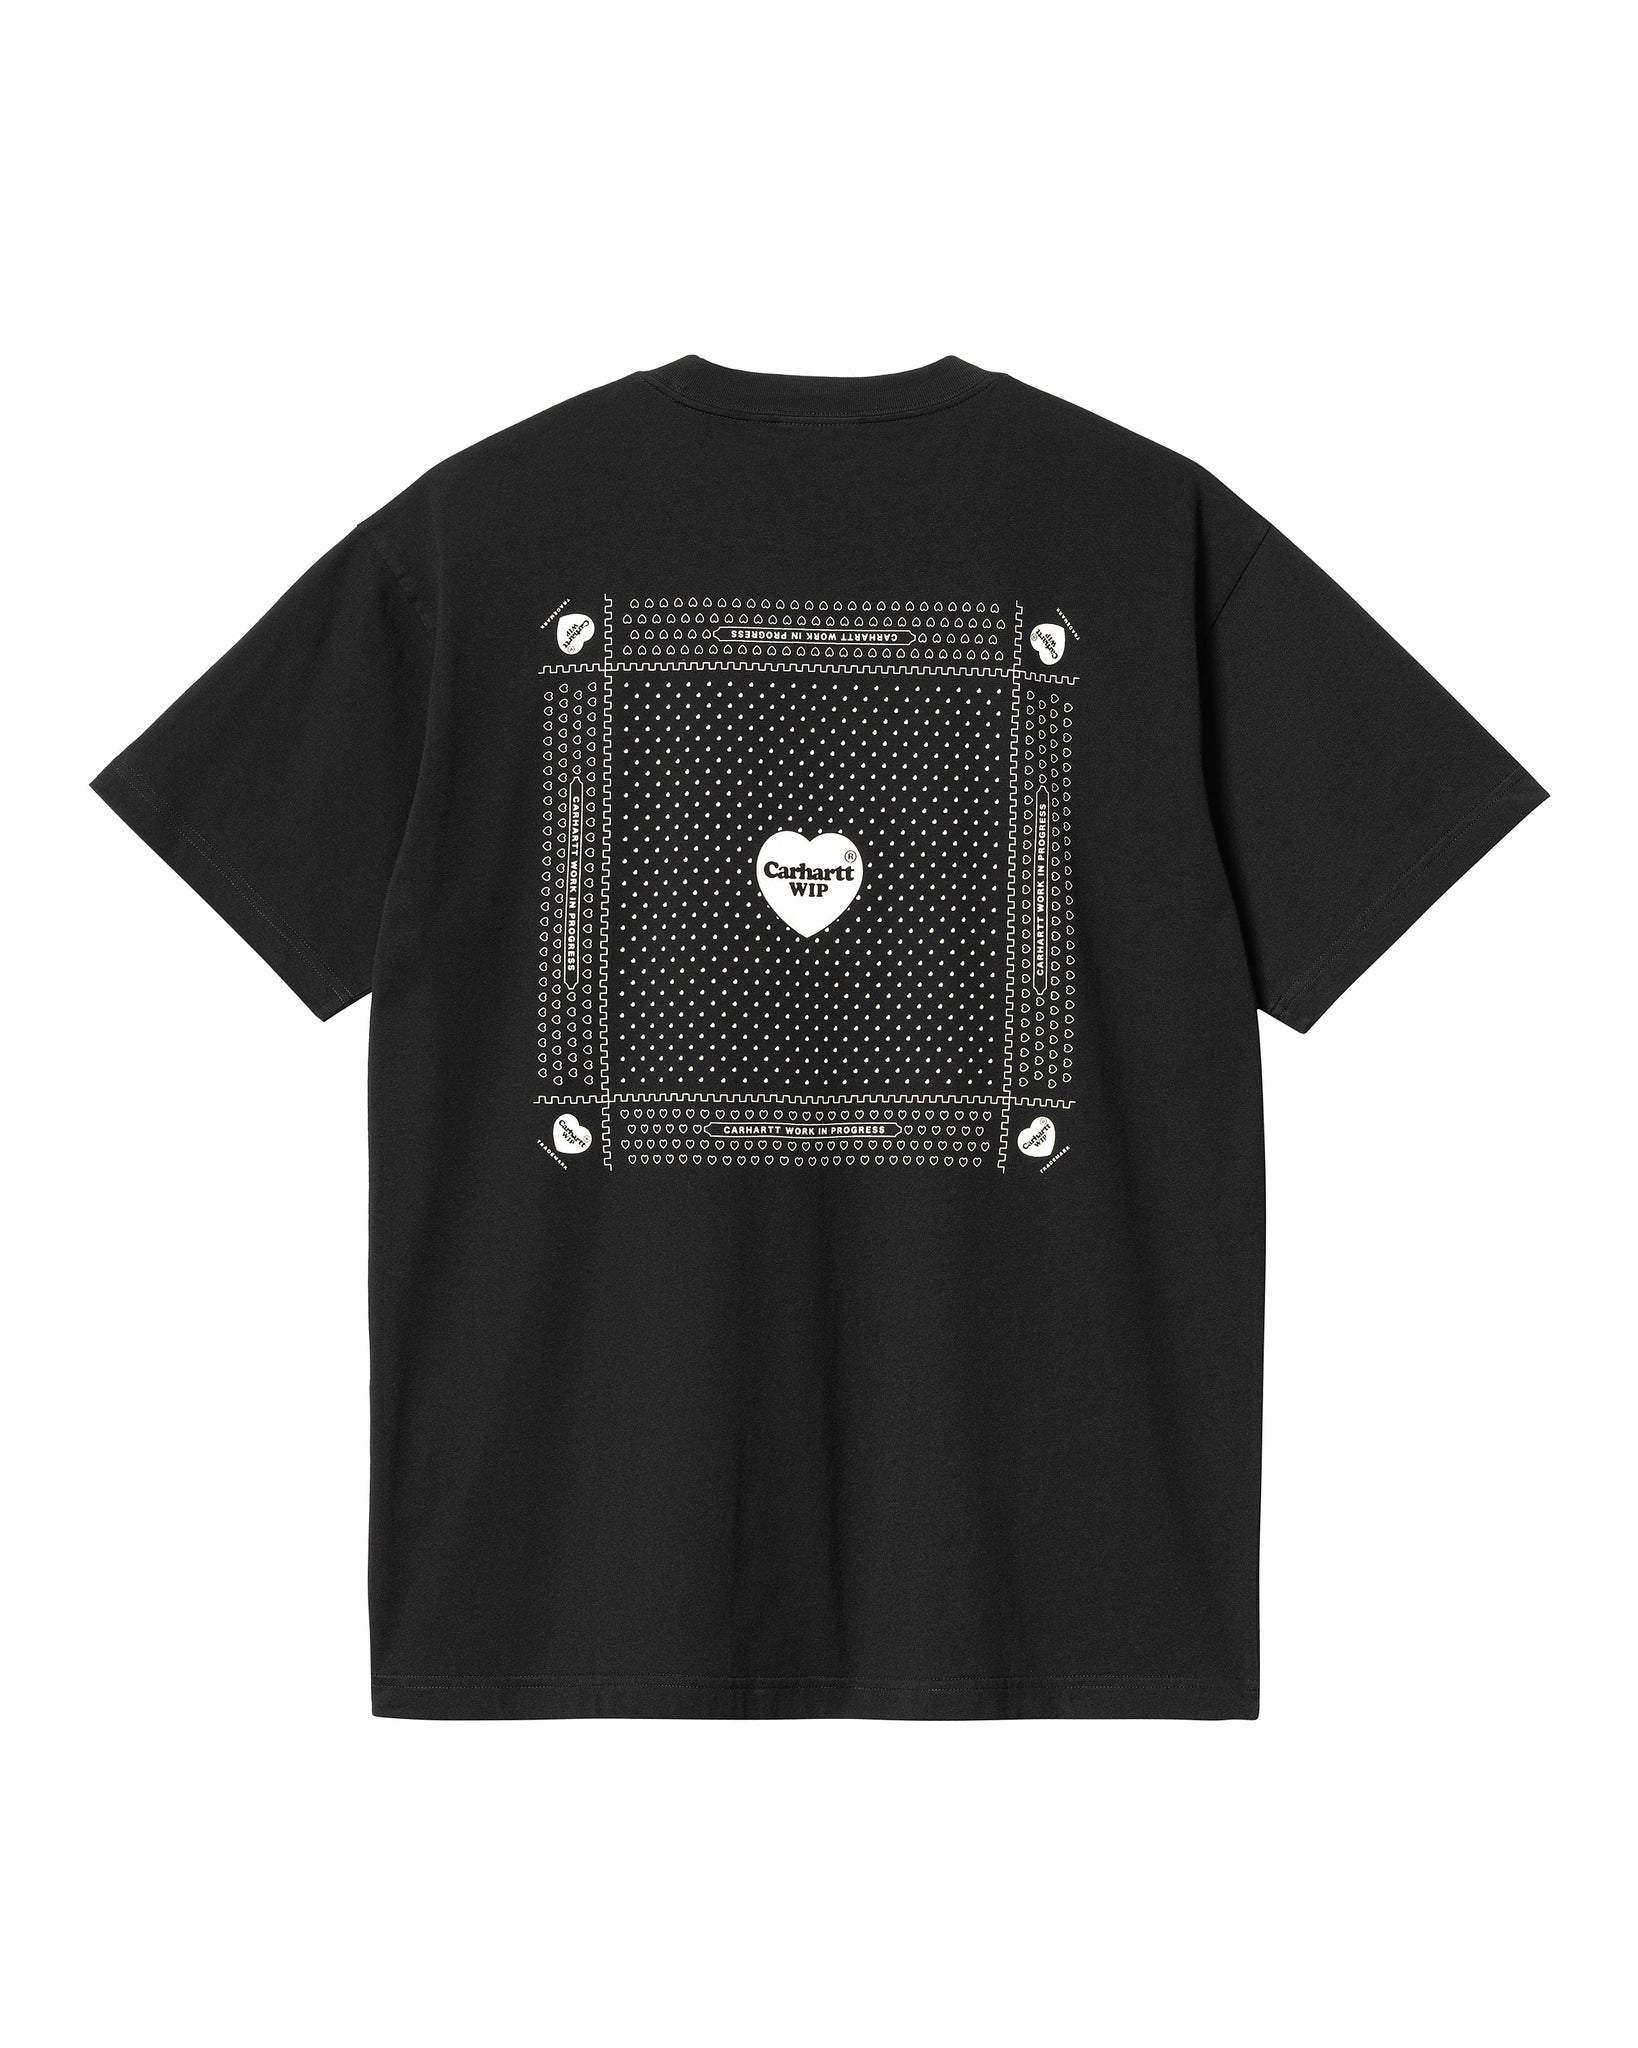 S/S Heart Bandana T-Shirt - Black/White (stone washed)